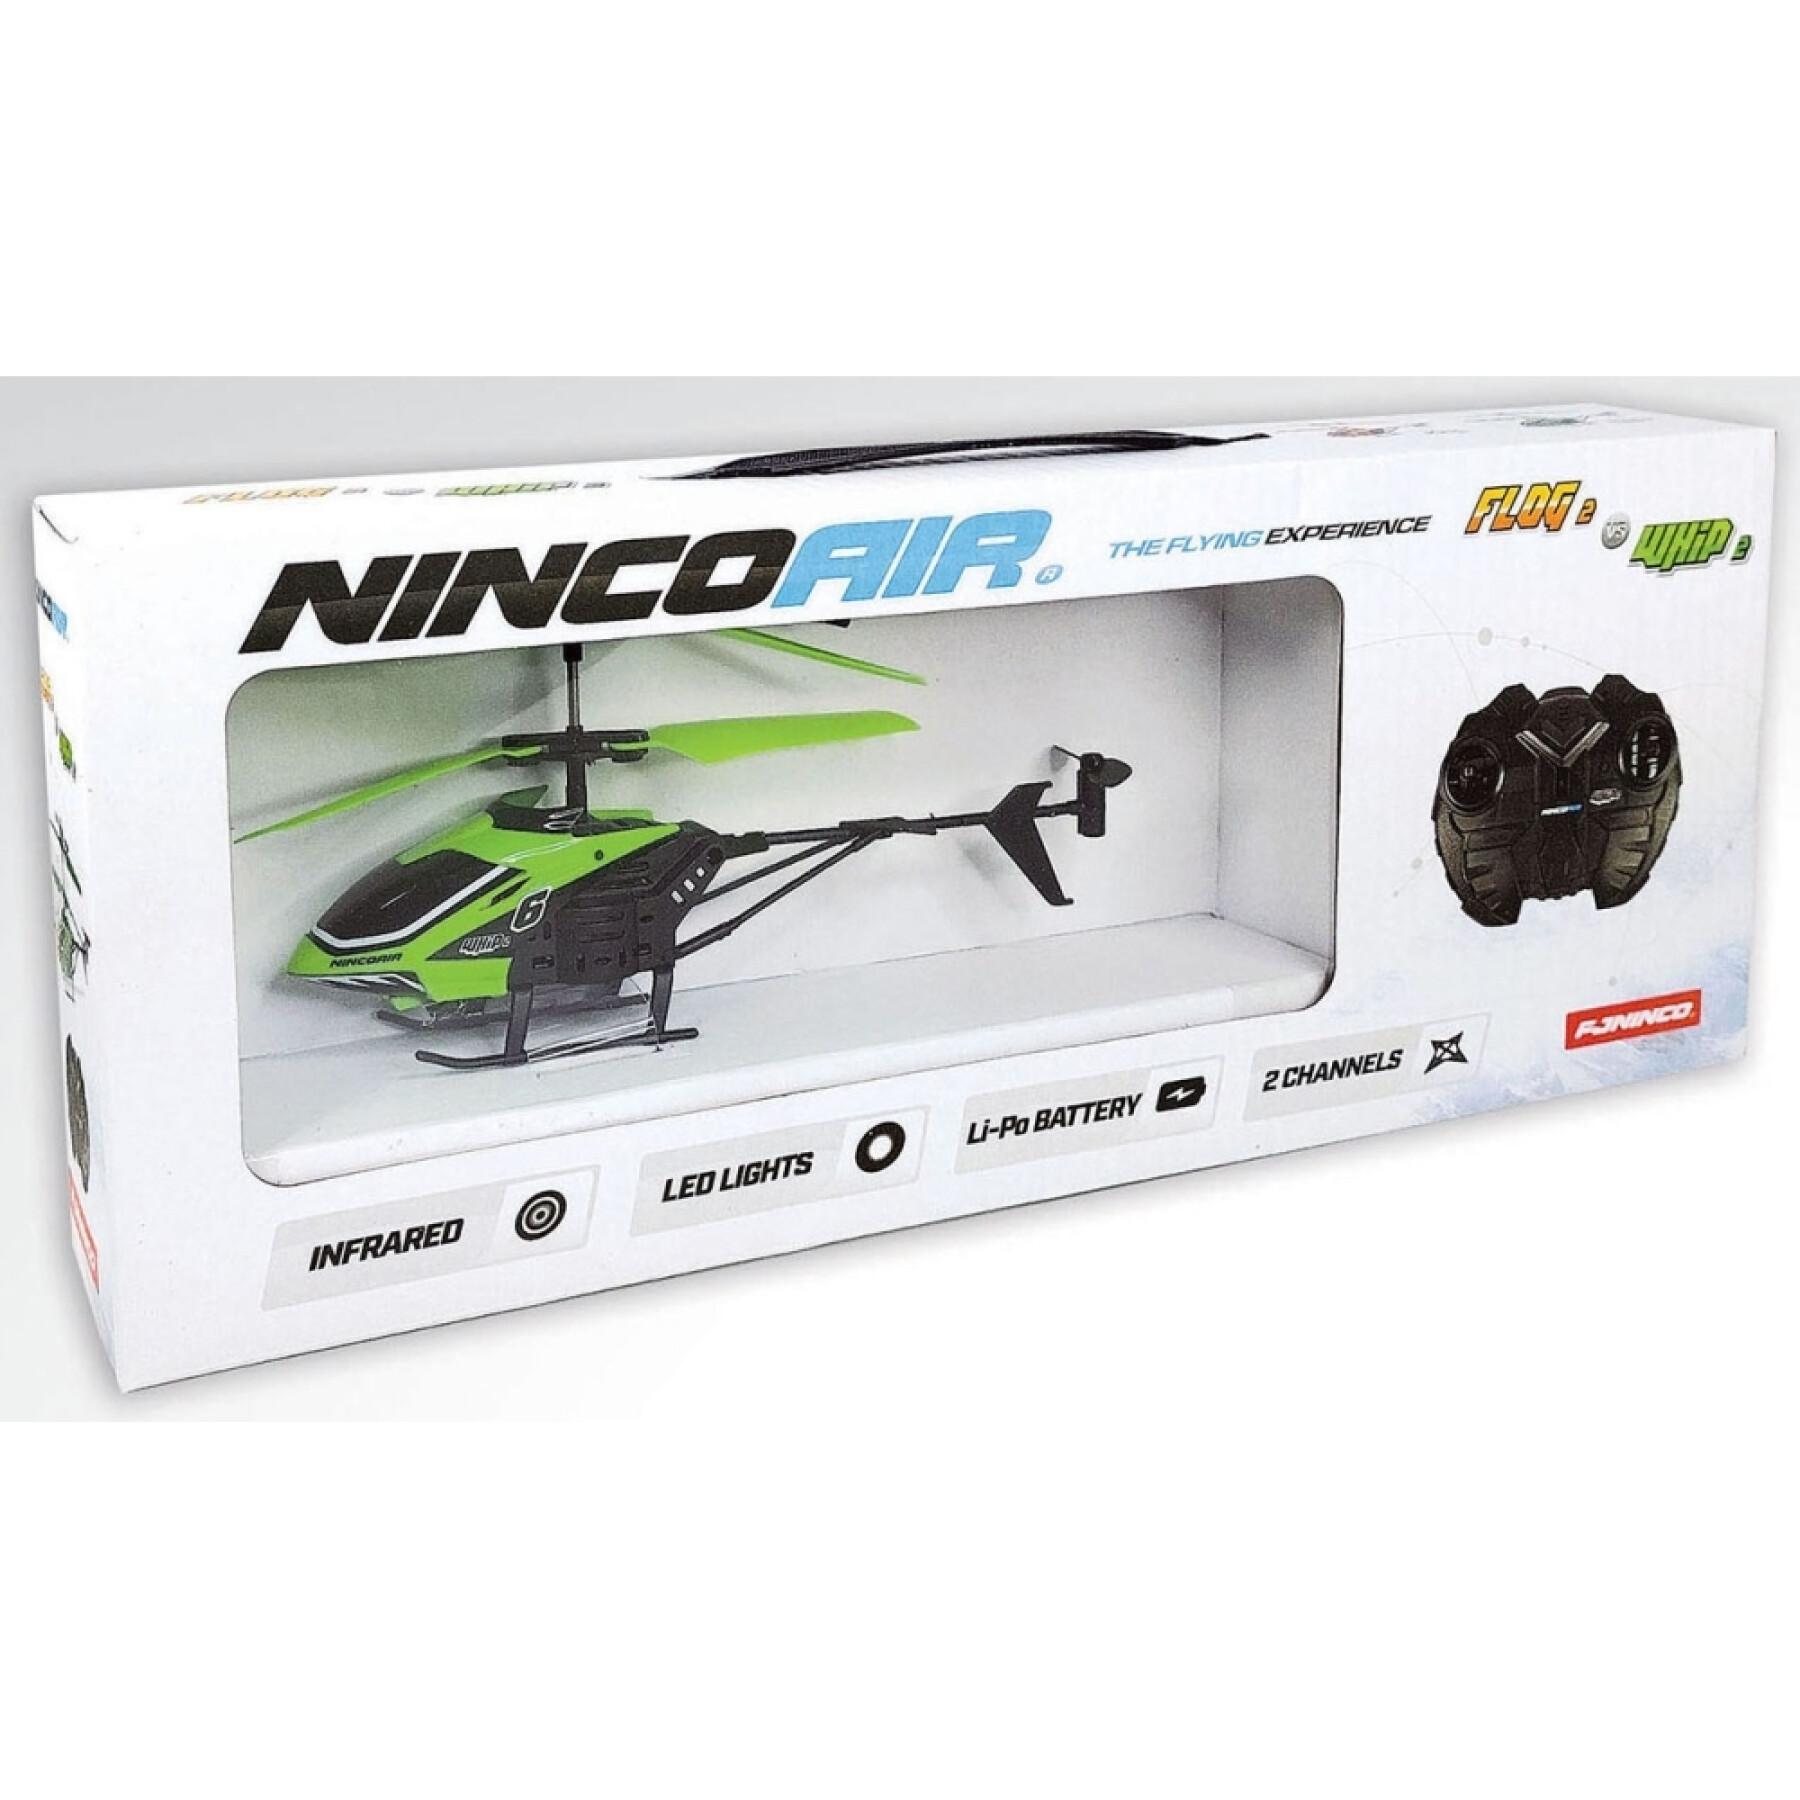 Ferngesteuerter Hubschrauber aus der Luft Ninco Whip2